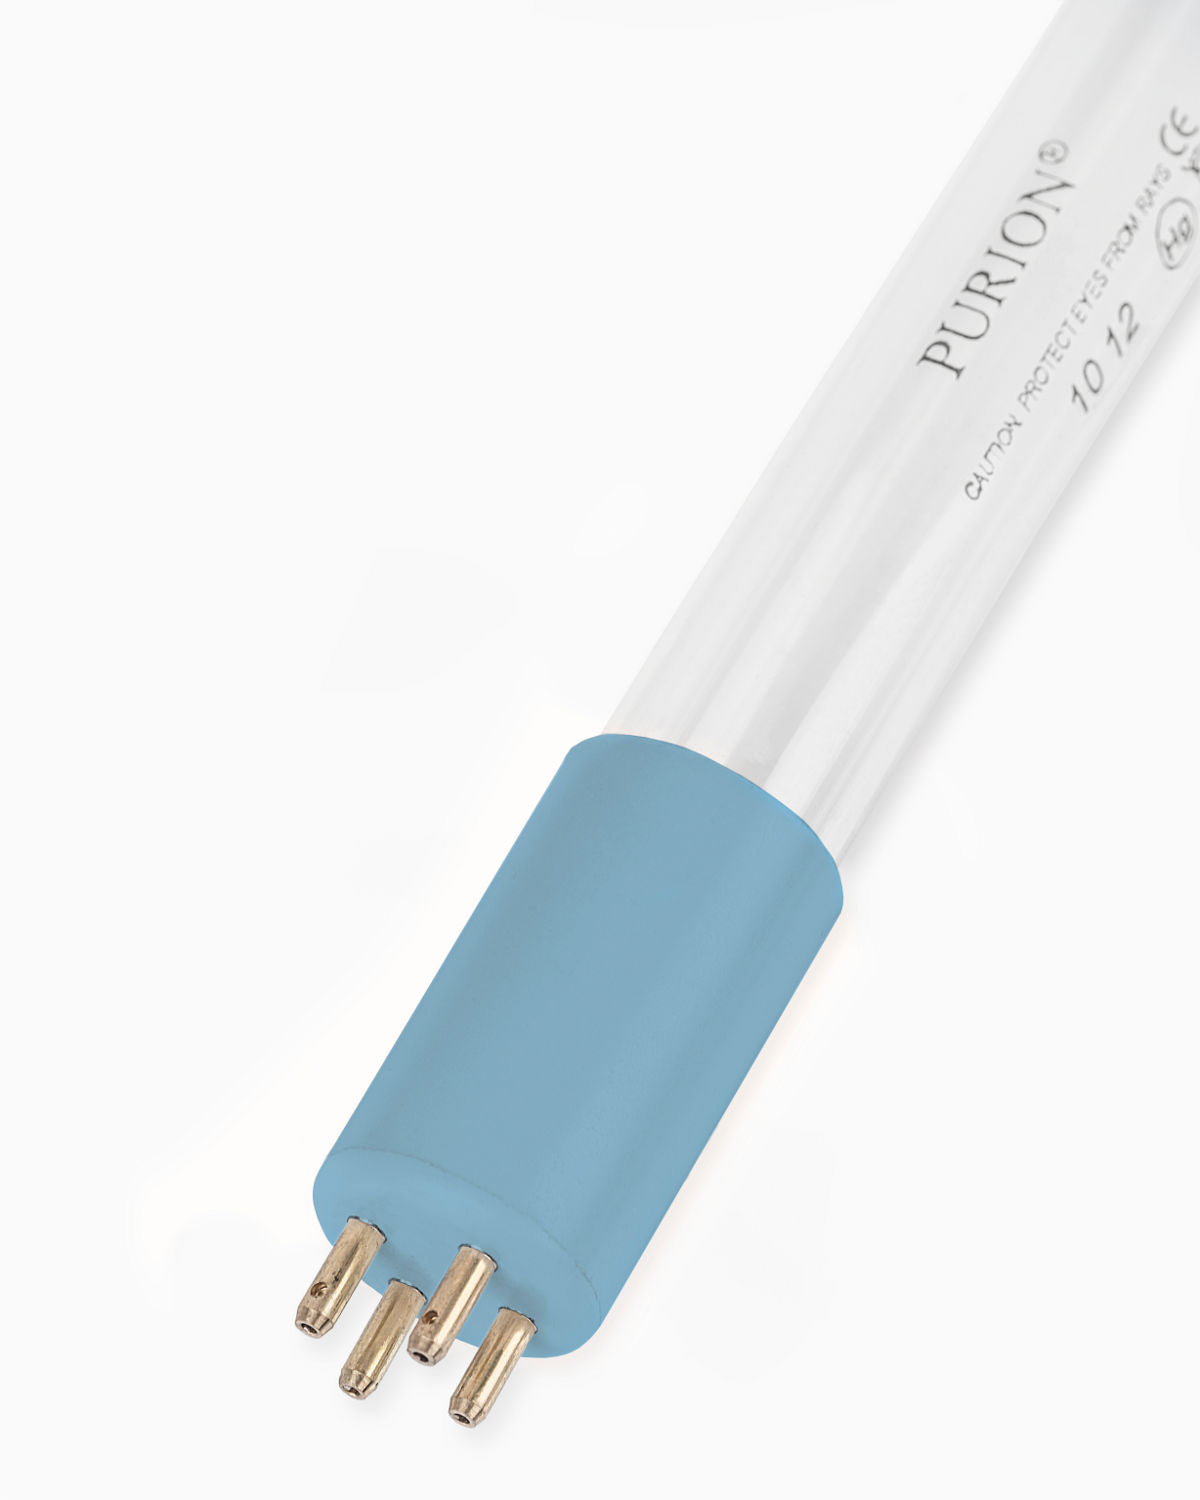 Eine PURION 1000 110 - 240 V AC ESM Blaulichtröhre auf weißem Hintergrund, die UV-C-Licht ausstrahlt, von der PURION GmbH.